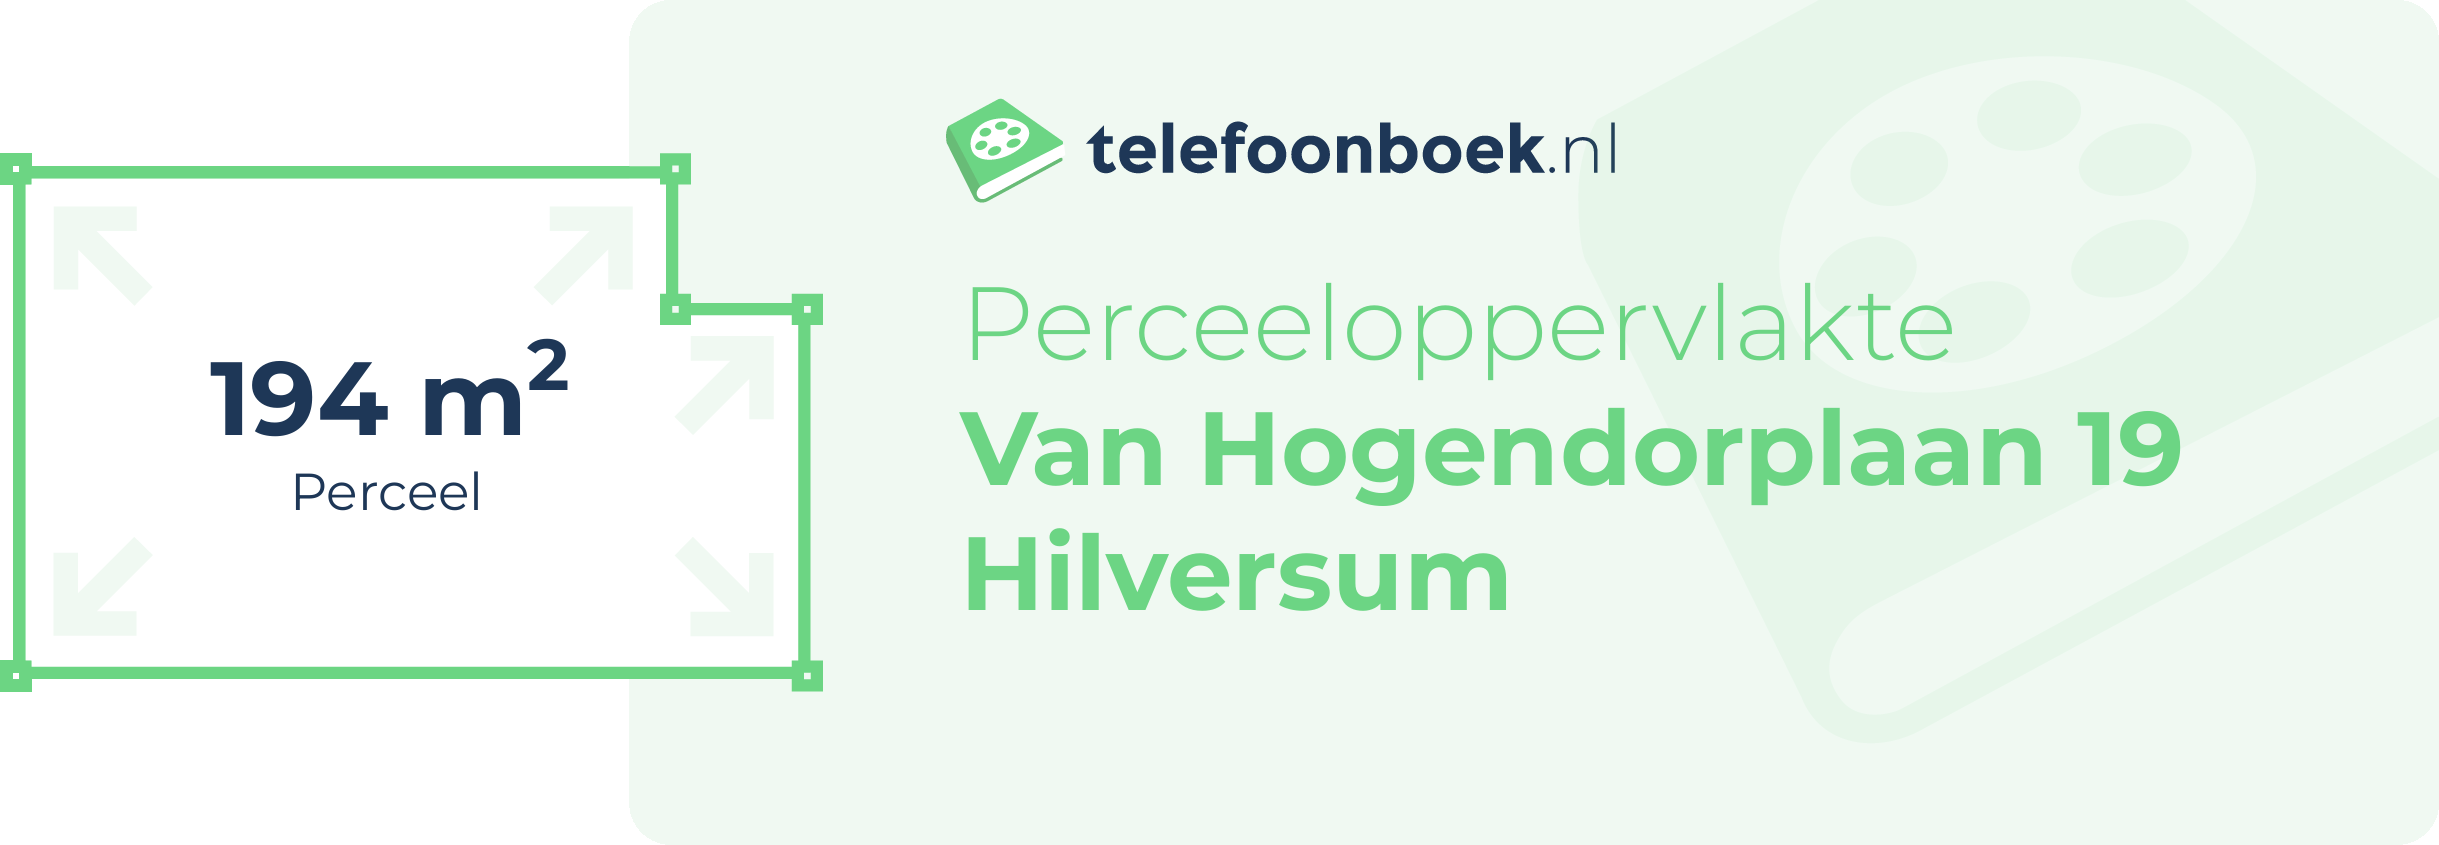 Perceeloppervlakte Van Hogendorplaan 19 Hilversum